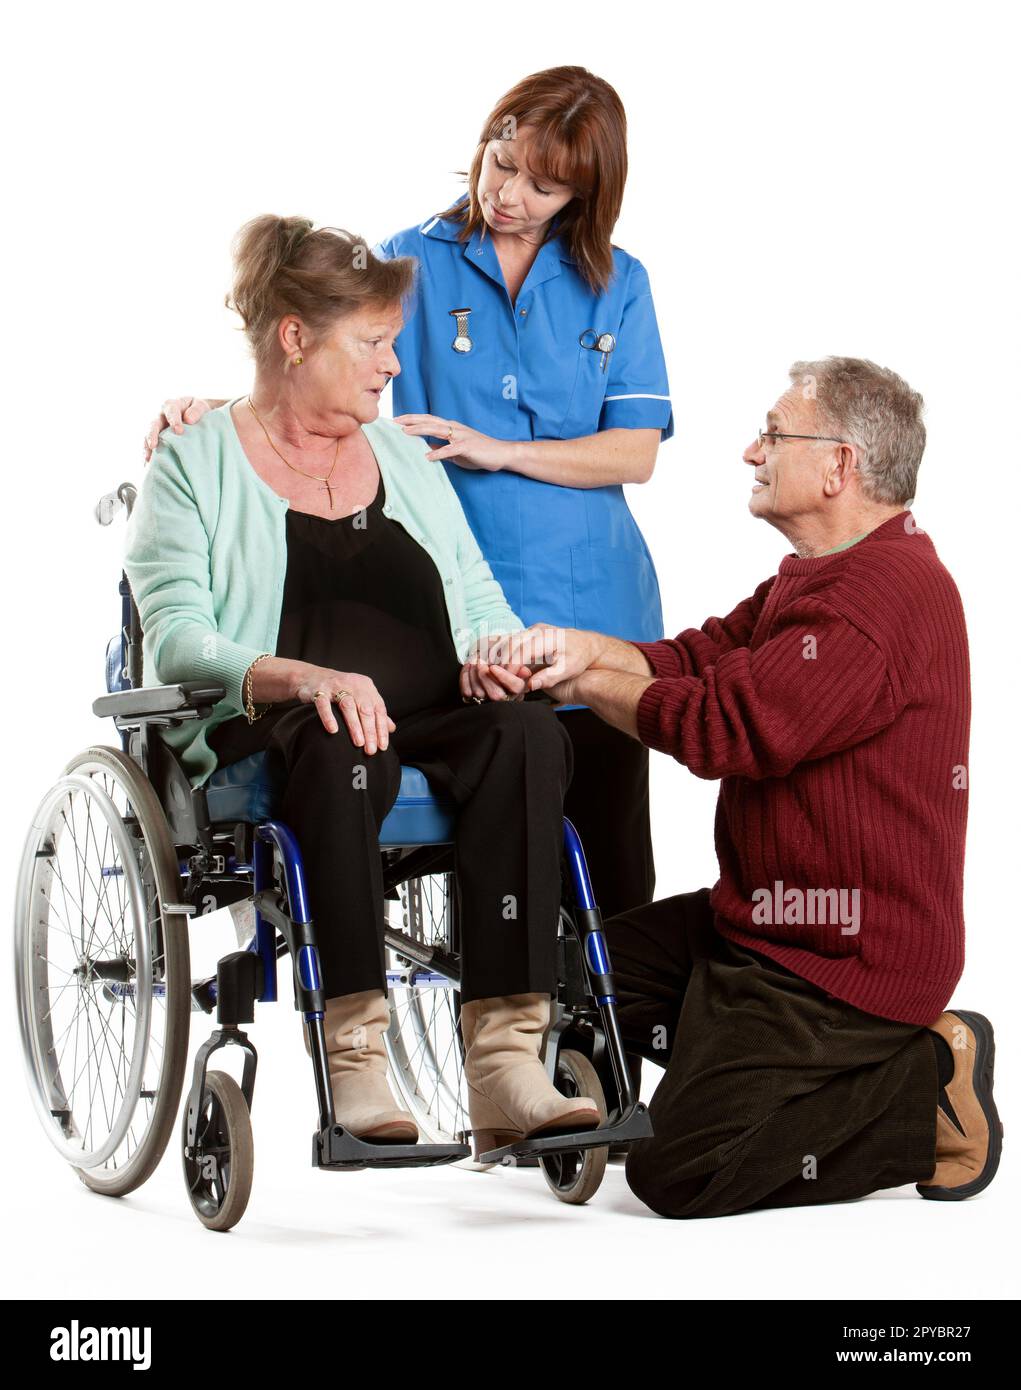 Professionisti della salute: Cura del paziente. Un paziente anziano su una sedia a rotelle che riceve il supporto del suo partner e di un'infermiera. Da una serie di immagini correlate. Foto Stock